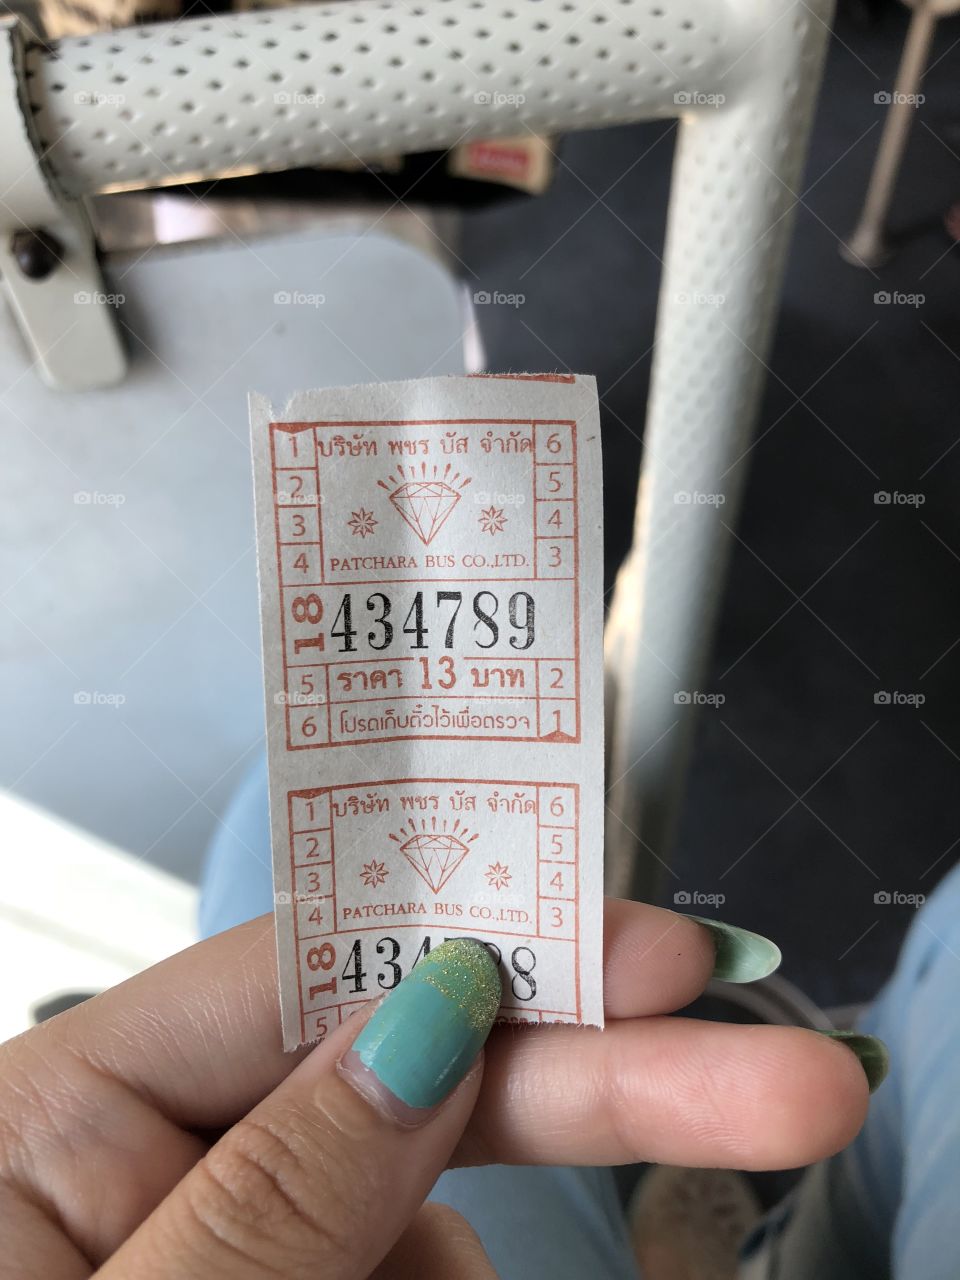 Bus ticket in Thailand 